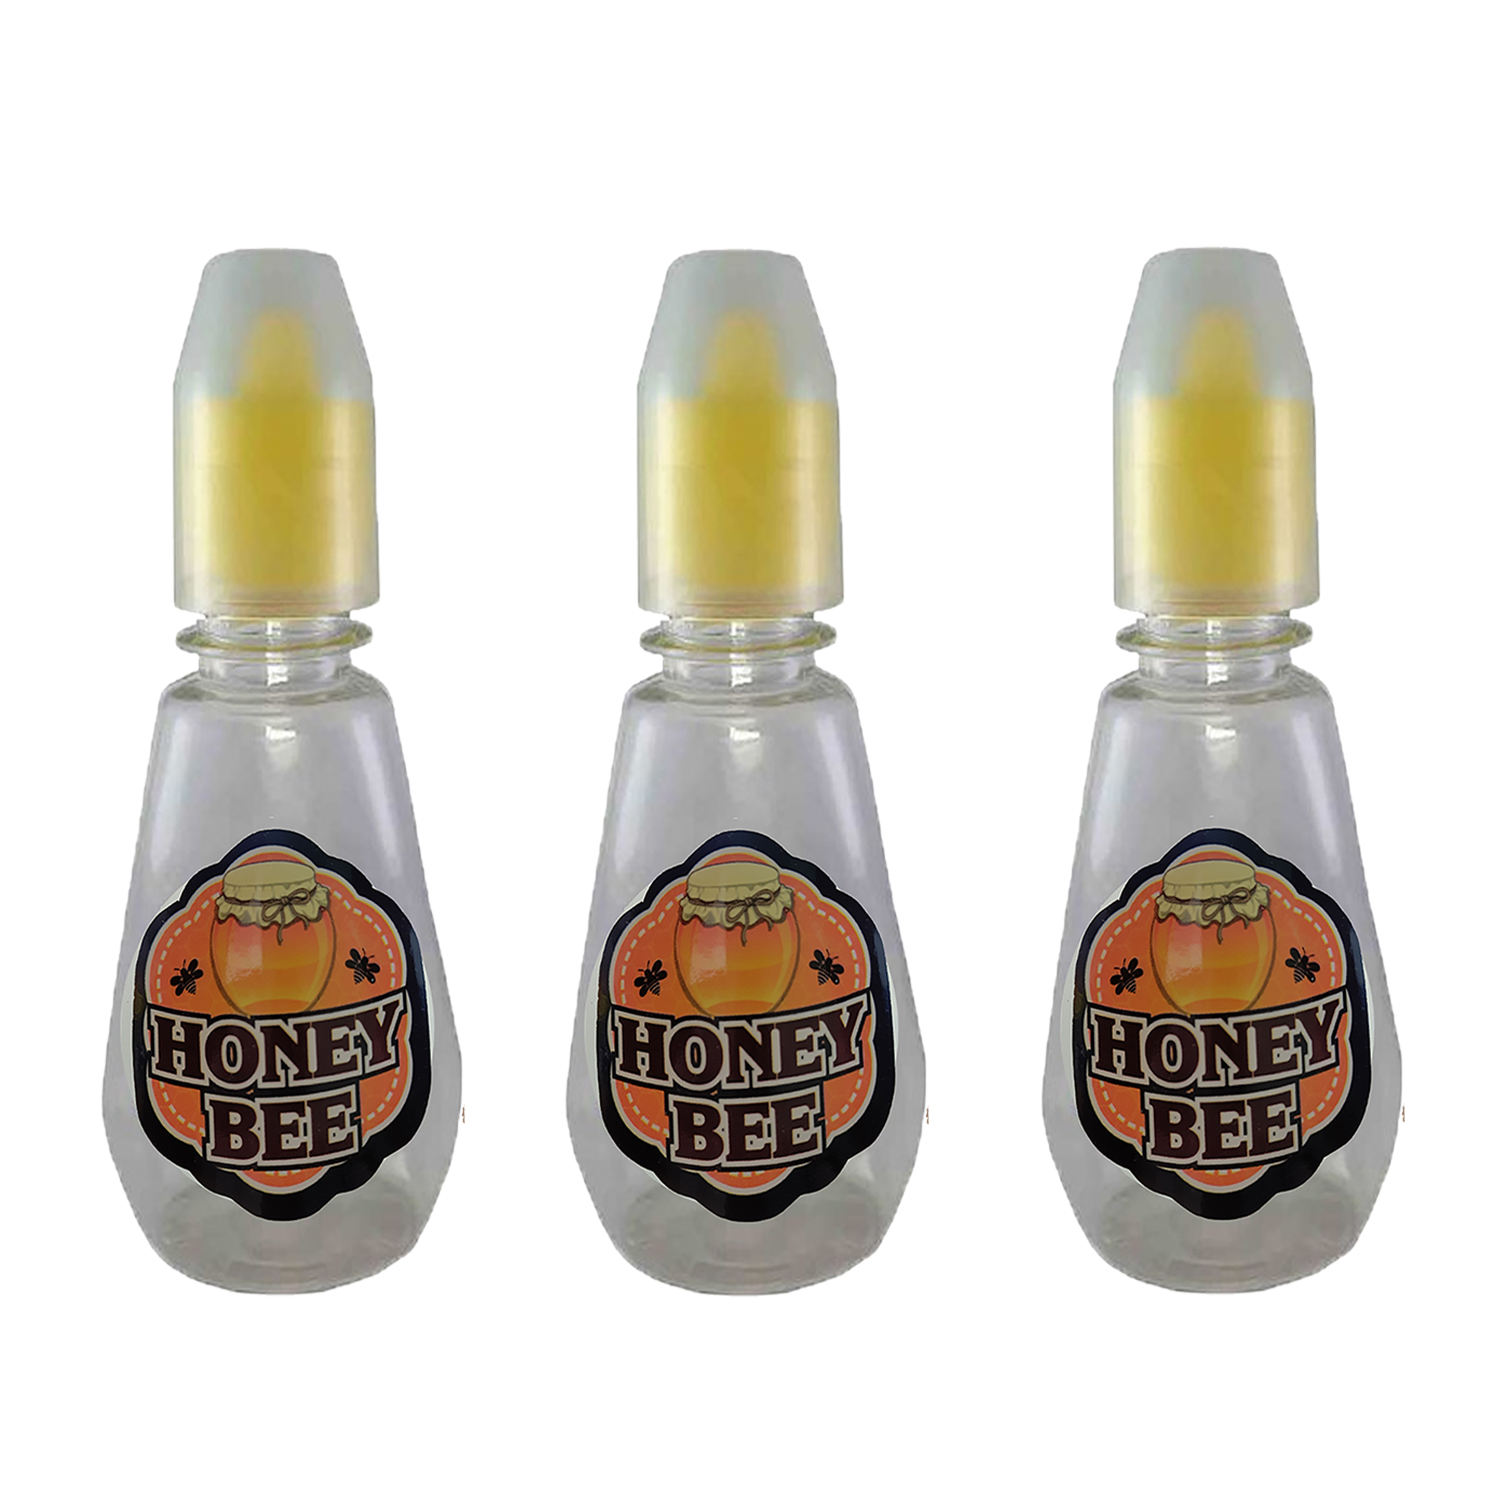 ظرف عسل مدل Honey bee مجموعه 3 عددی